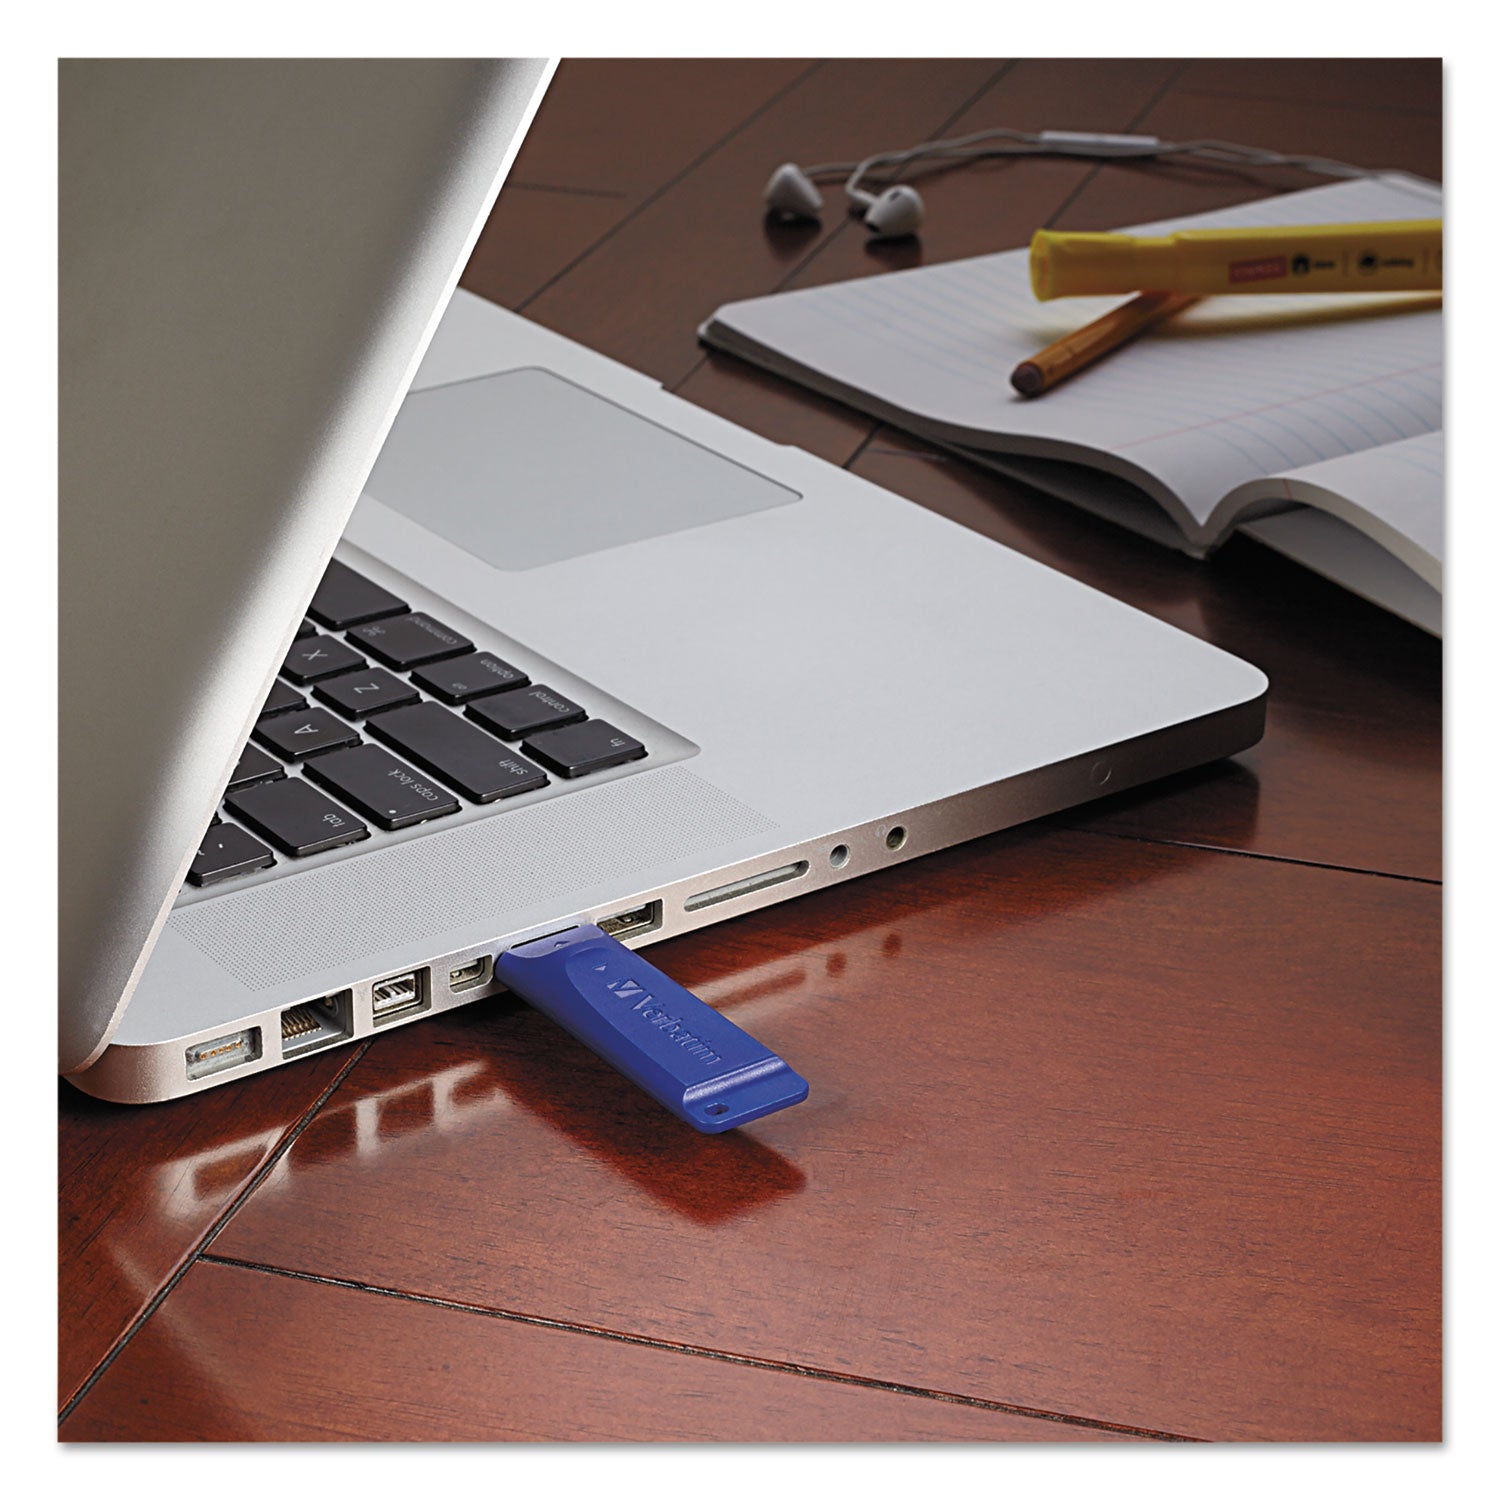 Classic USB 2.0 Flash Drive, 8 GB, Blue - 3